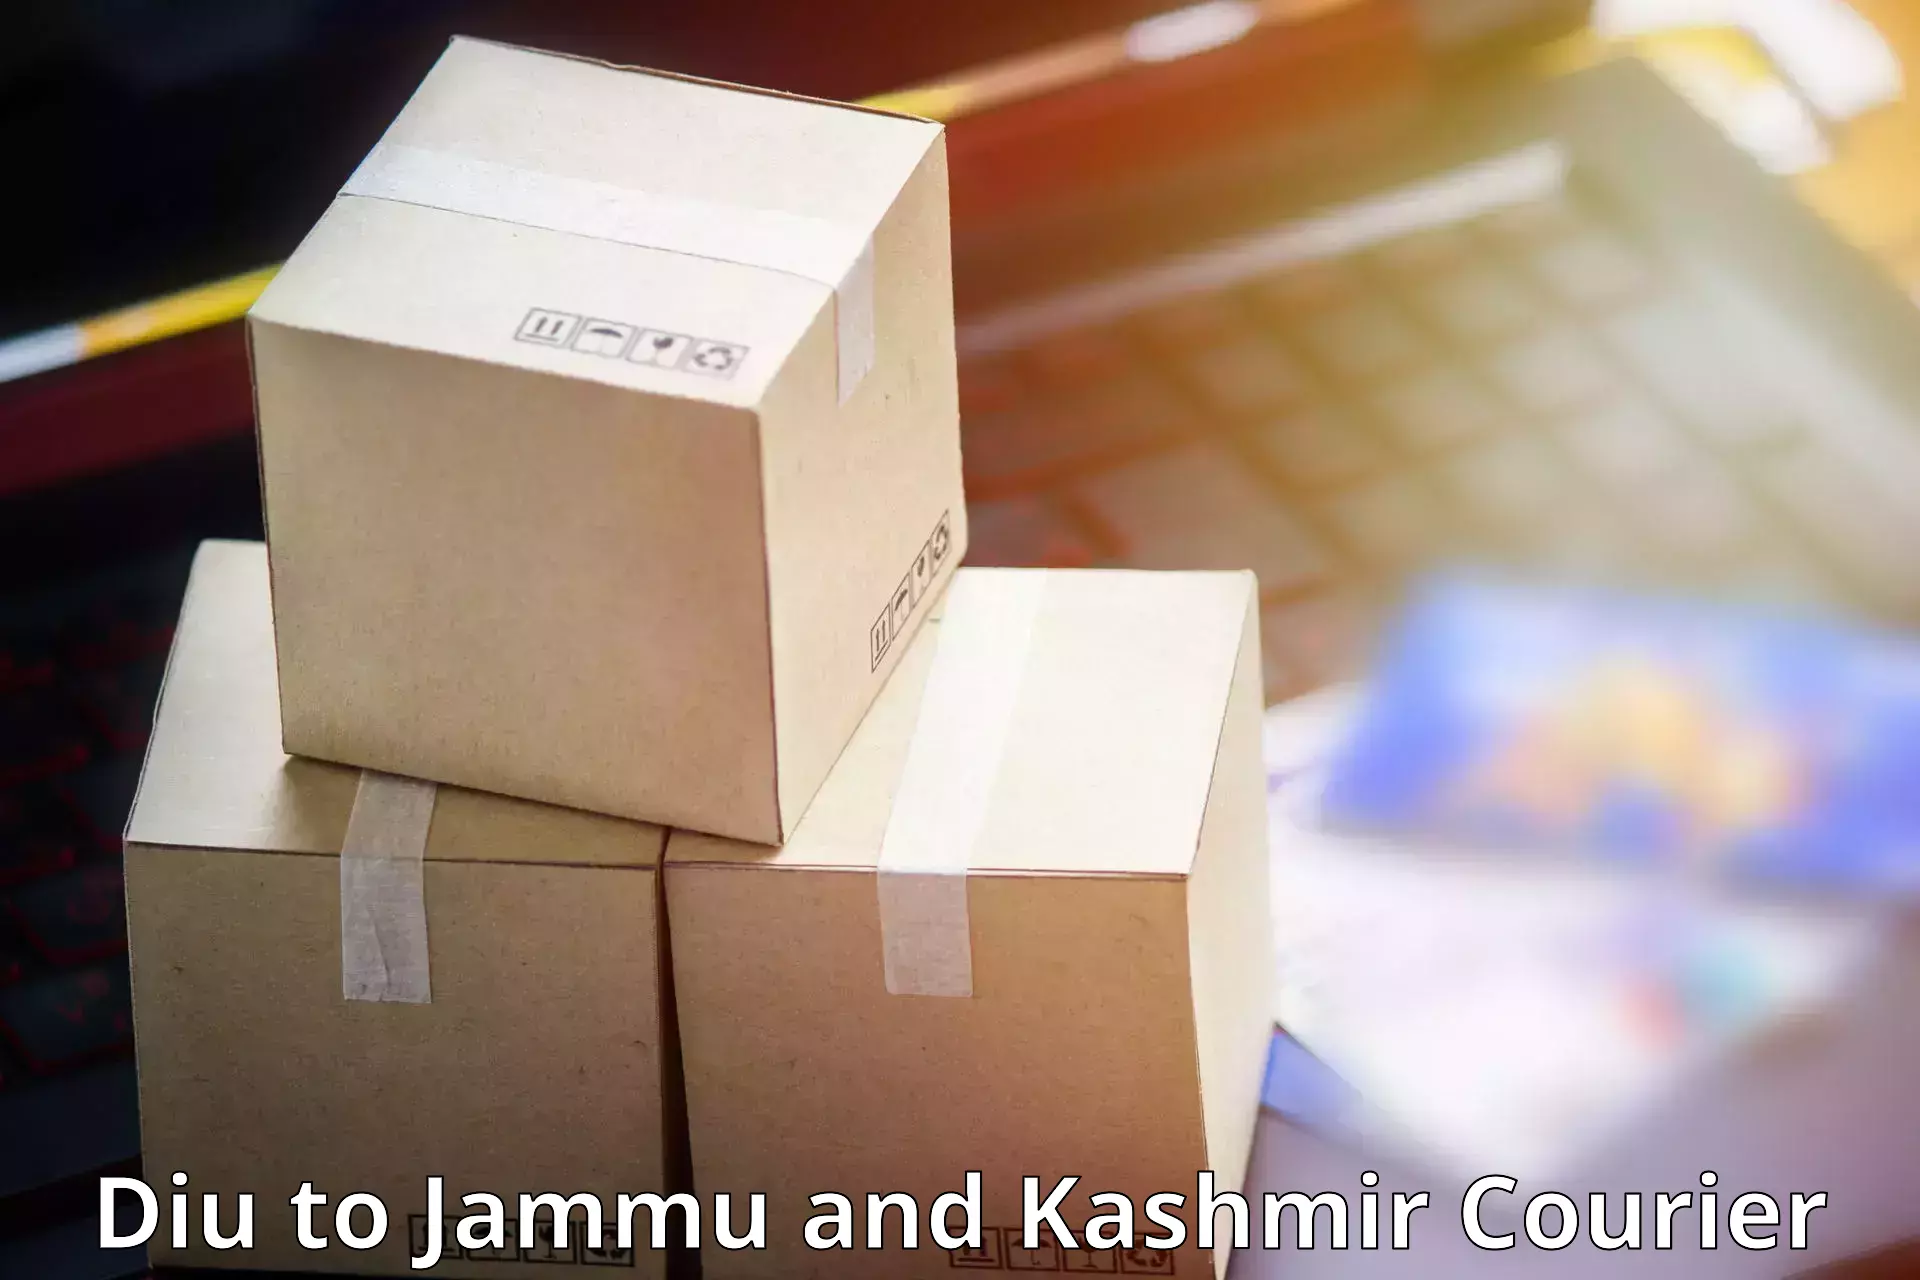 Express logistics Diu to Jammu and Kashmir